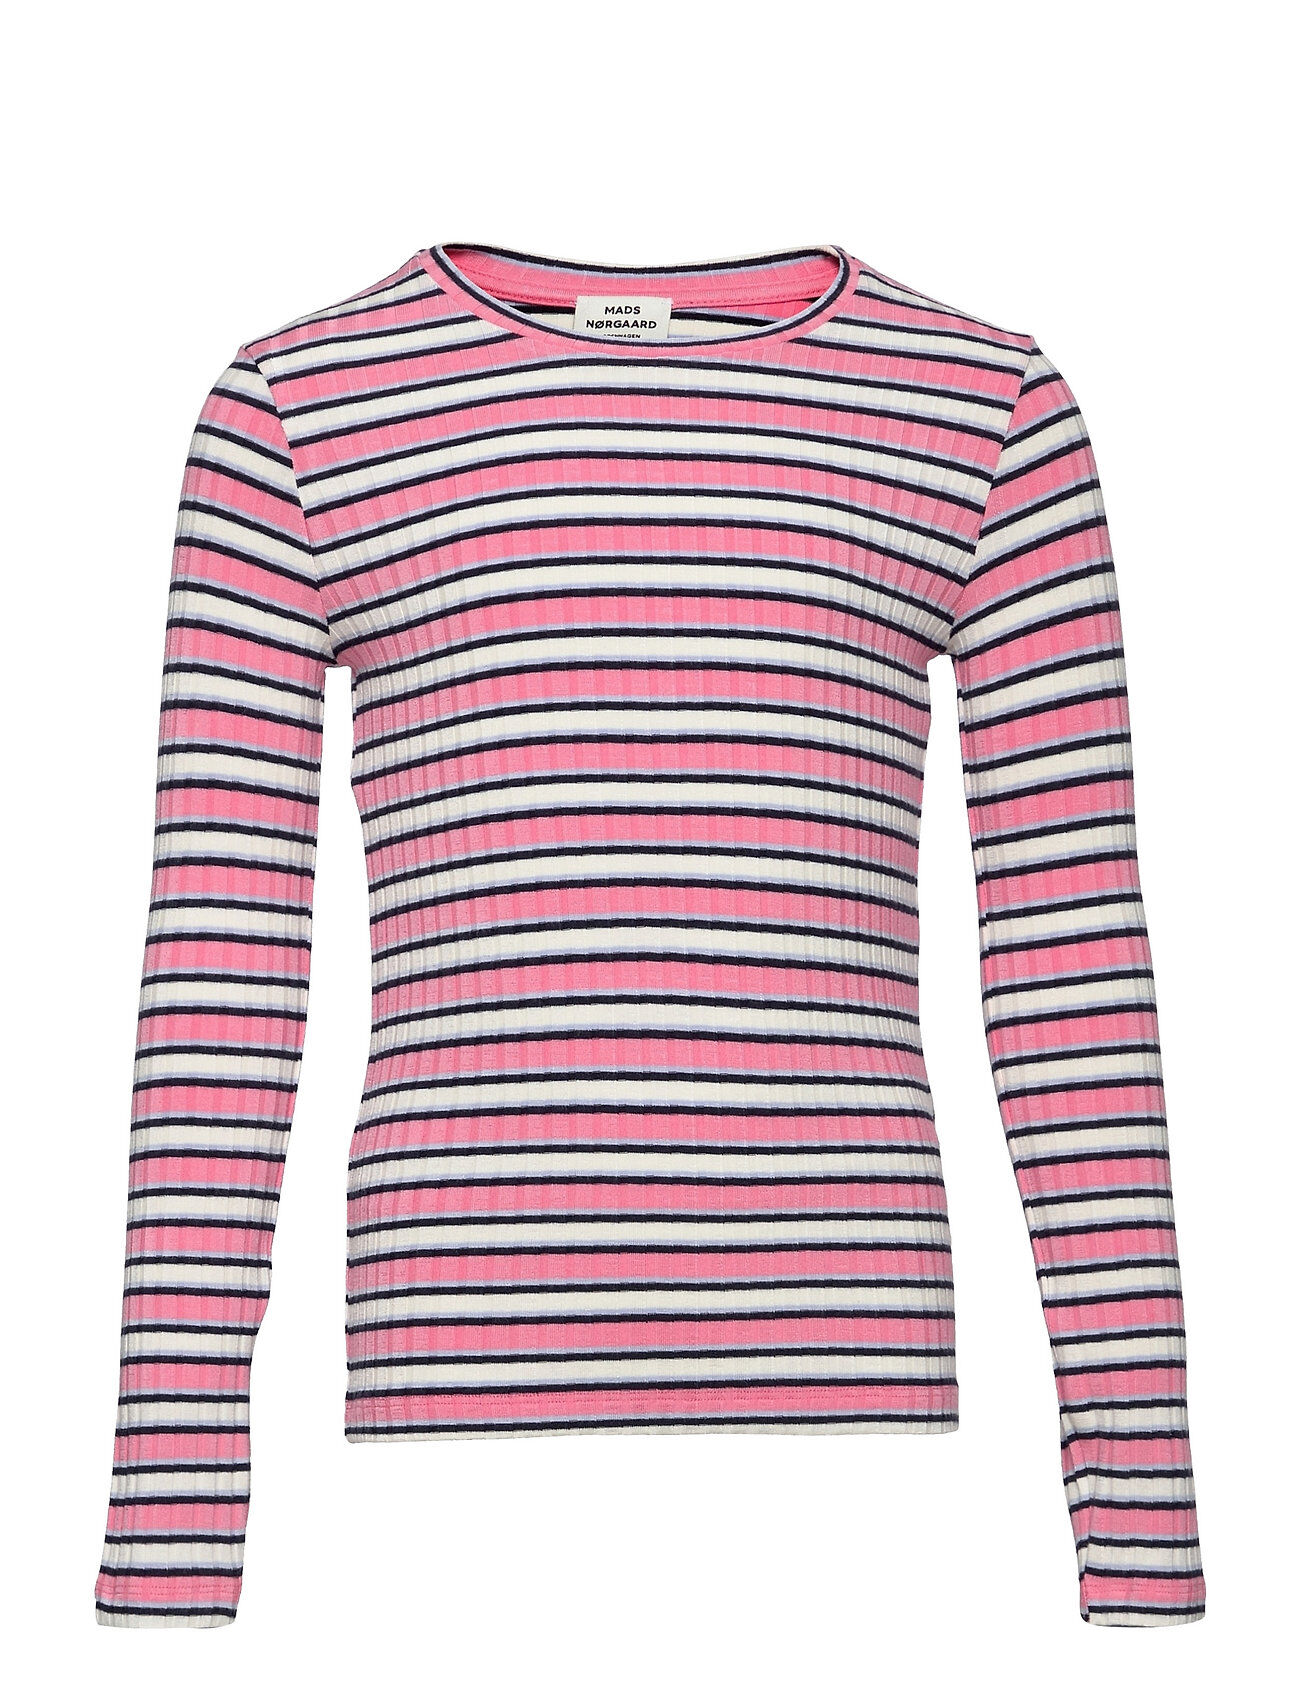 Mads Nørgaard 5X5 Stripe Talika T-shirts Long-sleeved T-shirts Multi/mønstret Mads Nørgaard